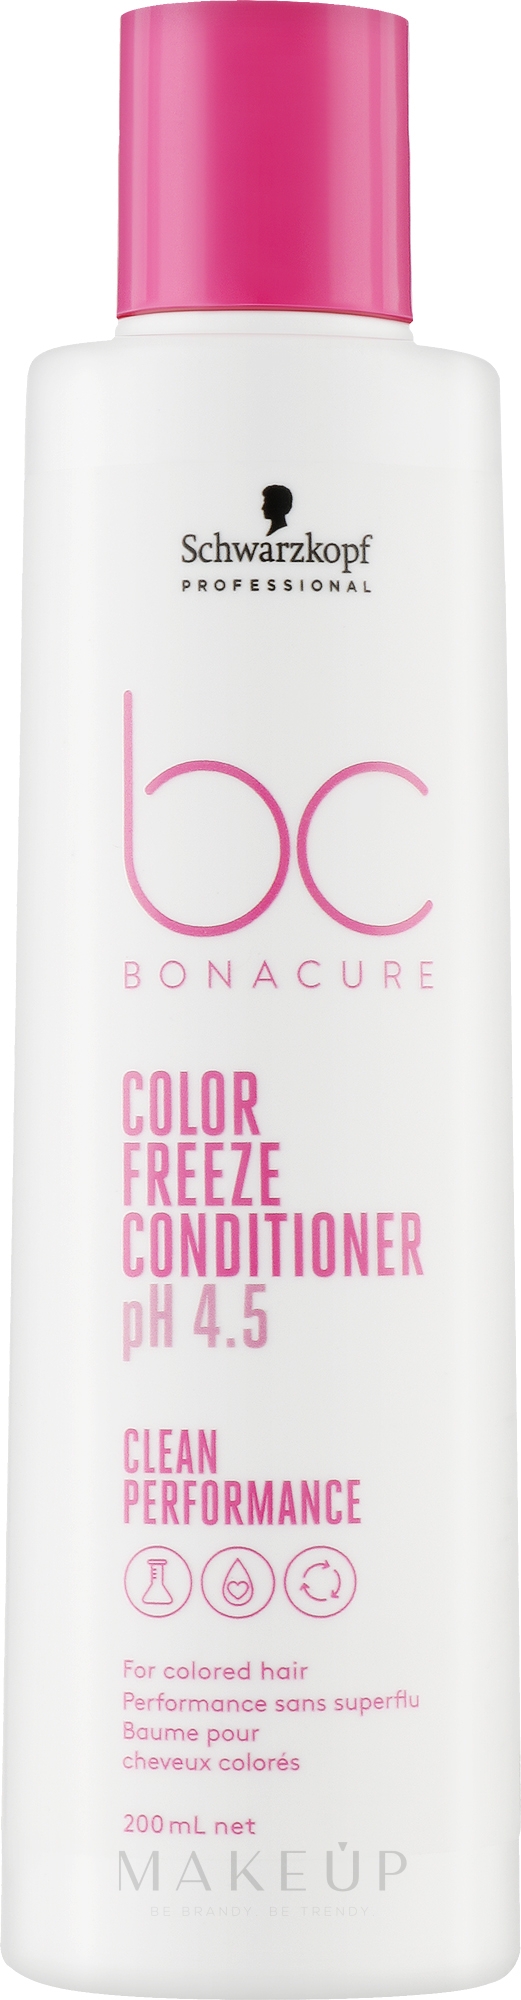 Conditioner für coloriertes Haar mit Weizenproteinen - Schwarzkopf Professional Bonacure Color Freeze Conditioner pH 4.5 — Bild 200 ml